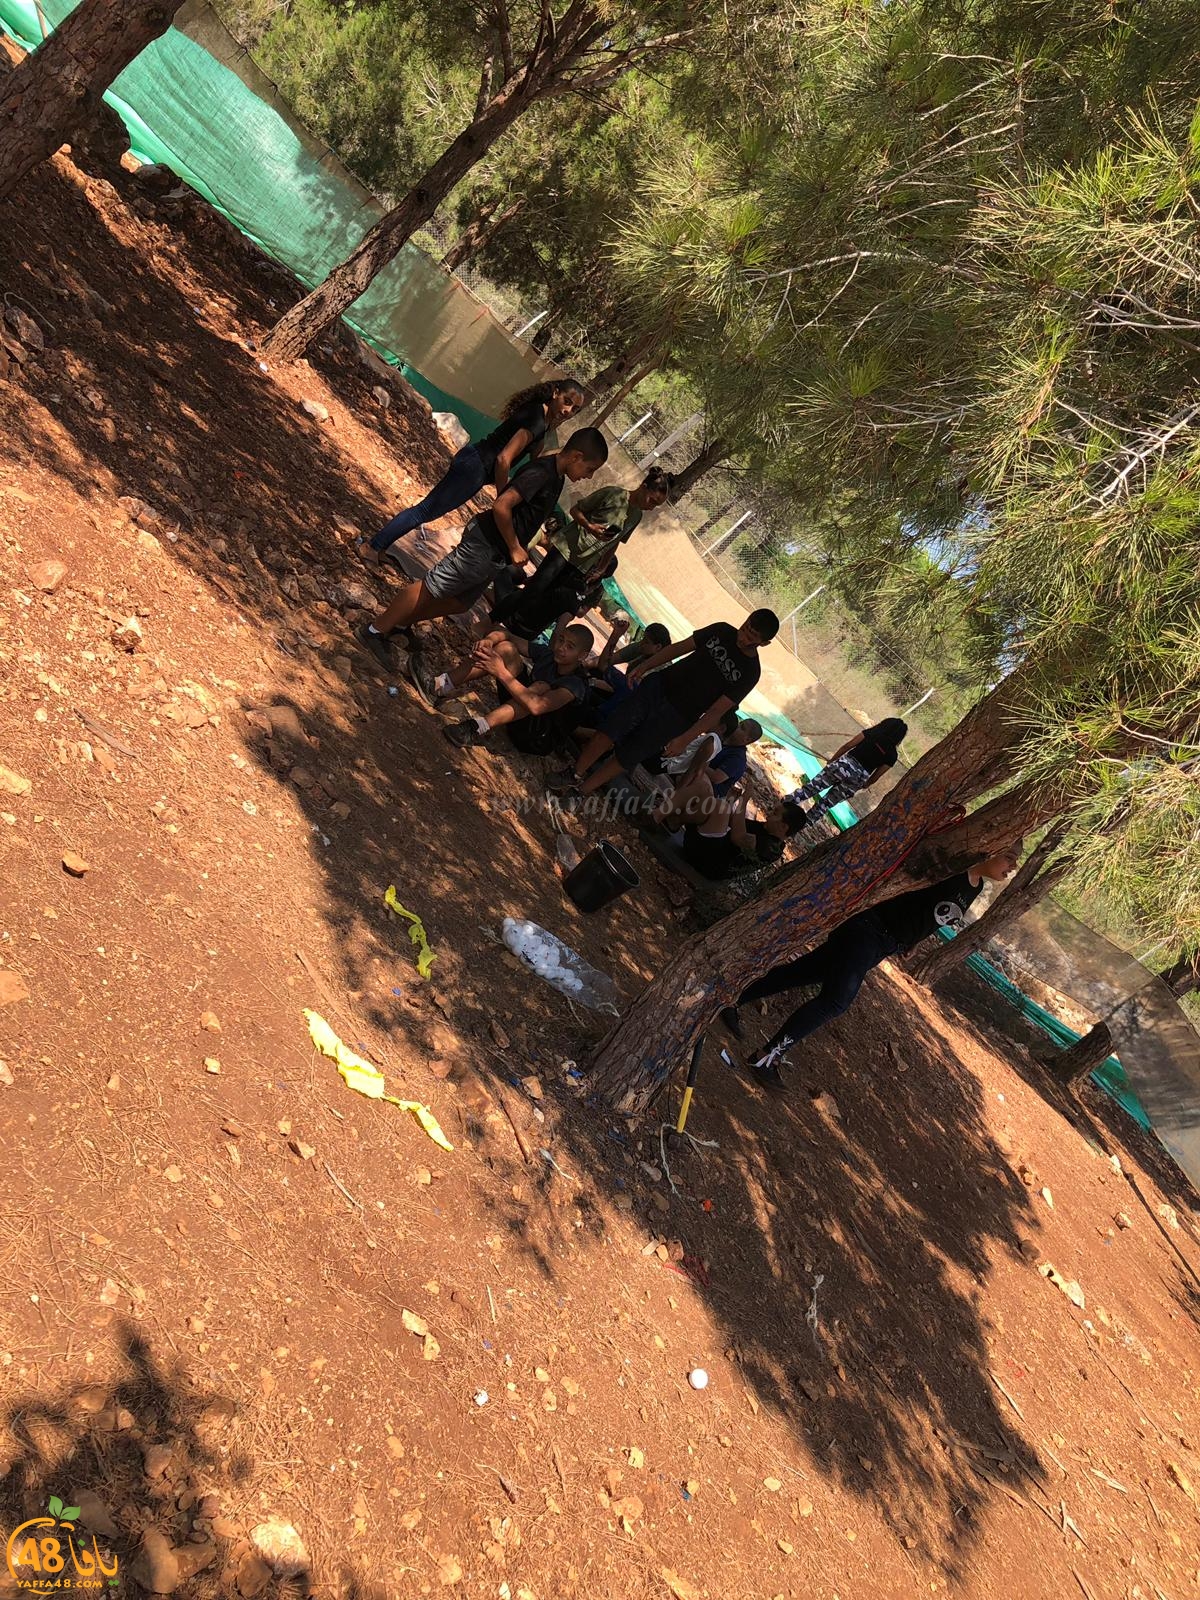  بالفيديو: فعاليات شيّقة ضمن المخيّم الصيفي لكشاف النادي الاسلامي بيافا شمال البلاد